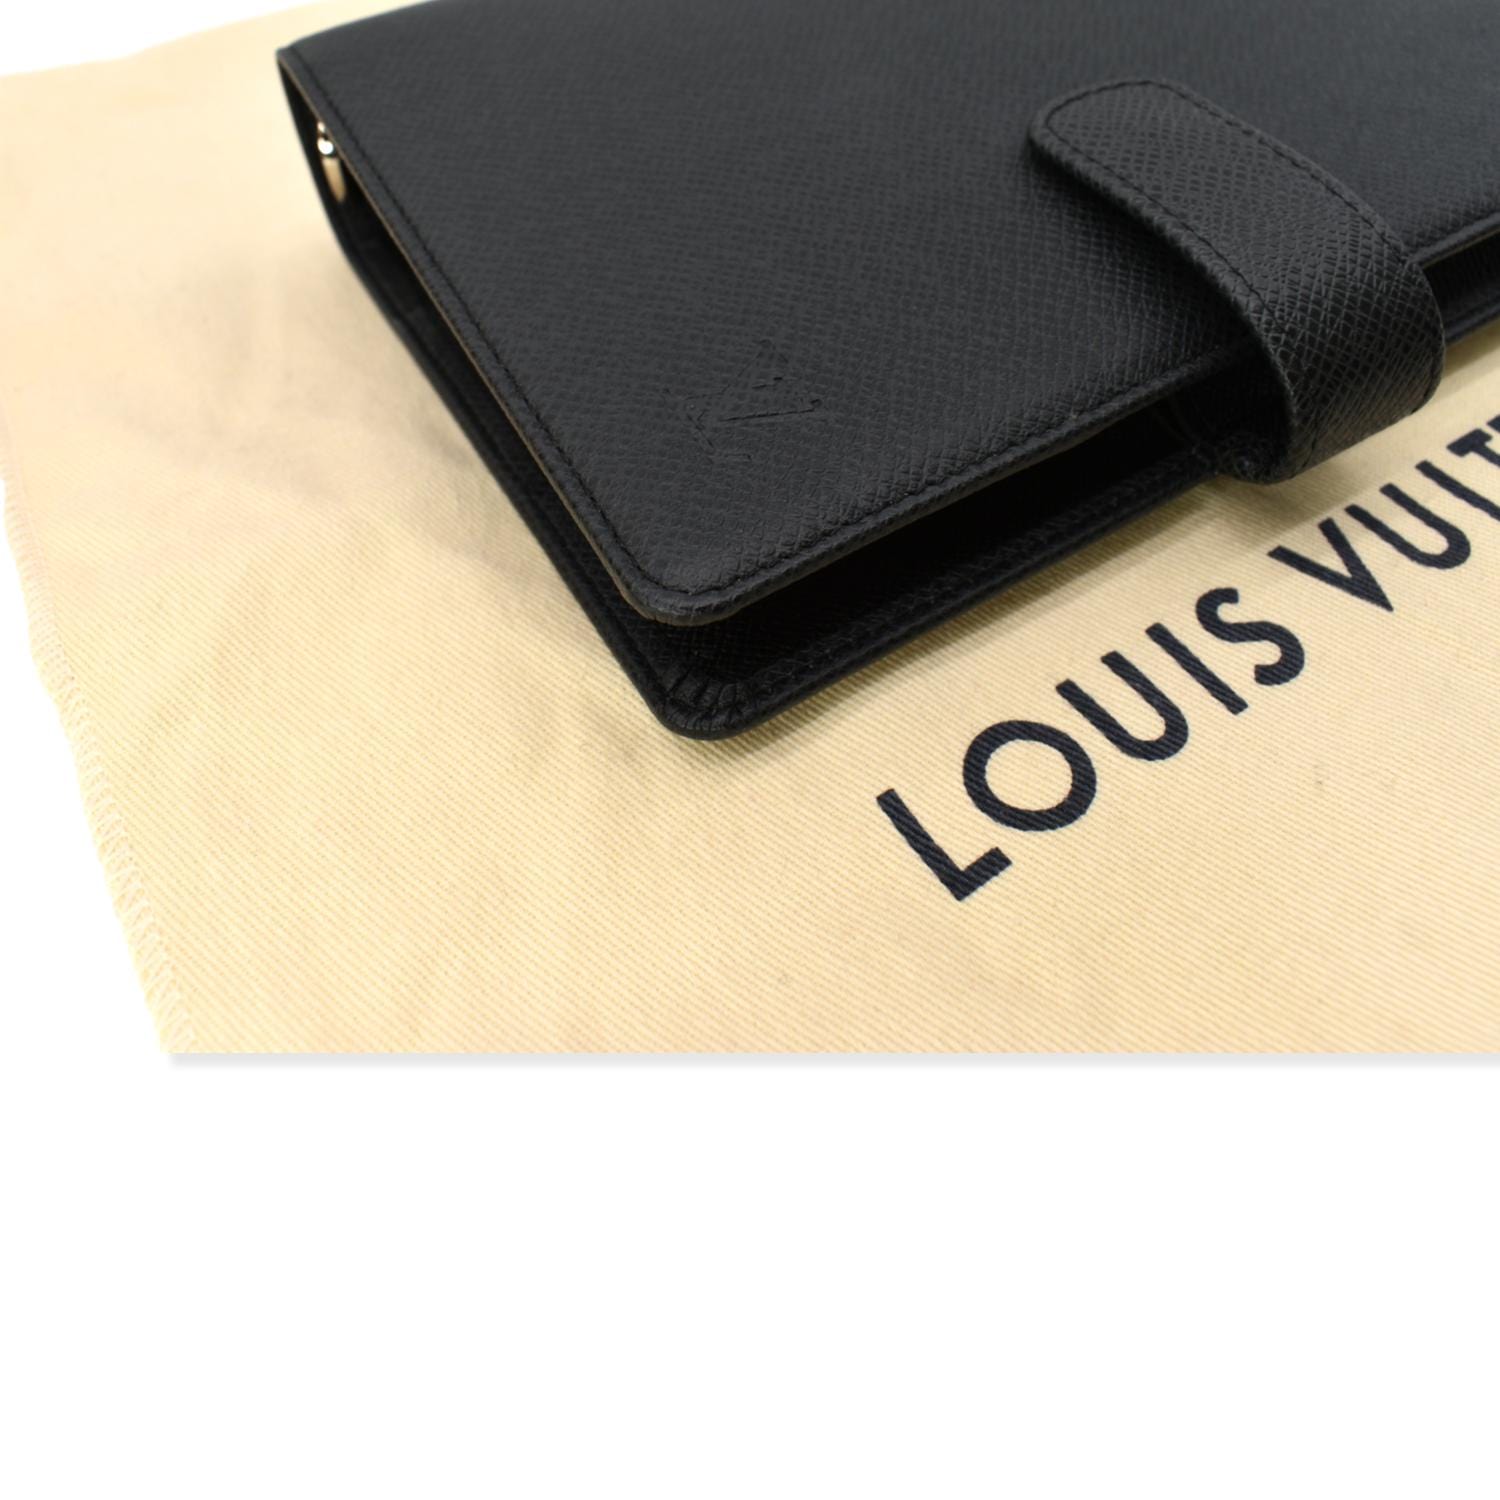 Louis Vuitton TAIGA 2019 Cruise Pocket Agenda Cover (R20425)